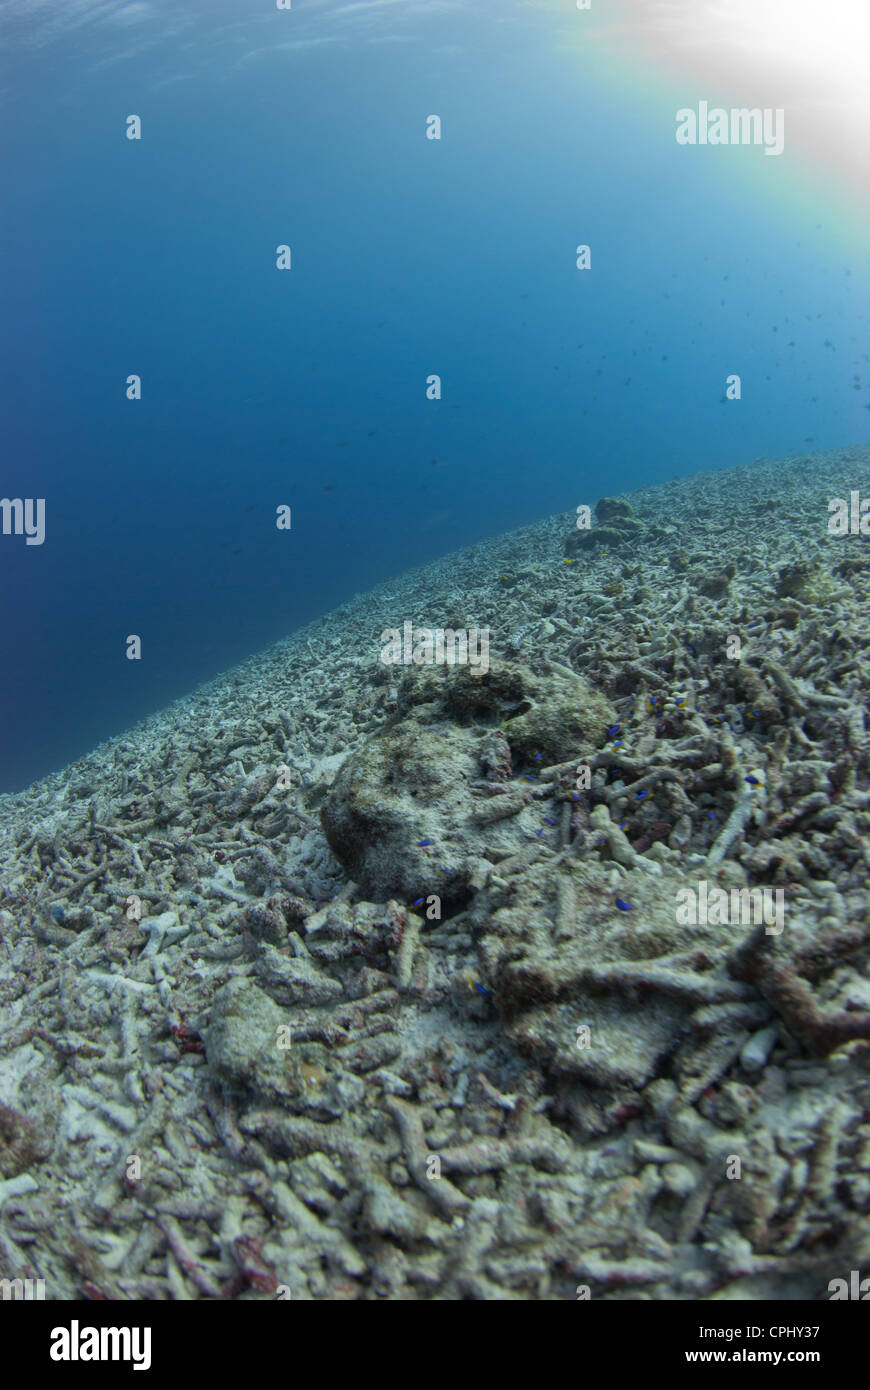 Ein zerstörter Riff von Bombe, Dynamit Fischen. Eine der am meisten nachhaltigen Fischerei Praxis. Genommen in Indonesien Südost-Asien Stockfoto